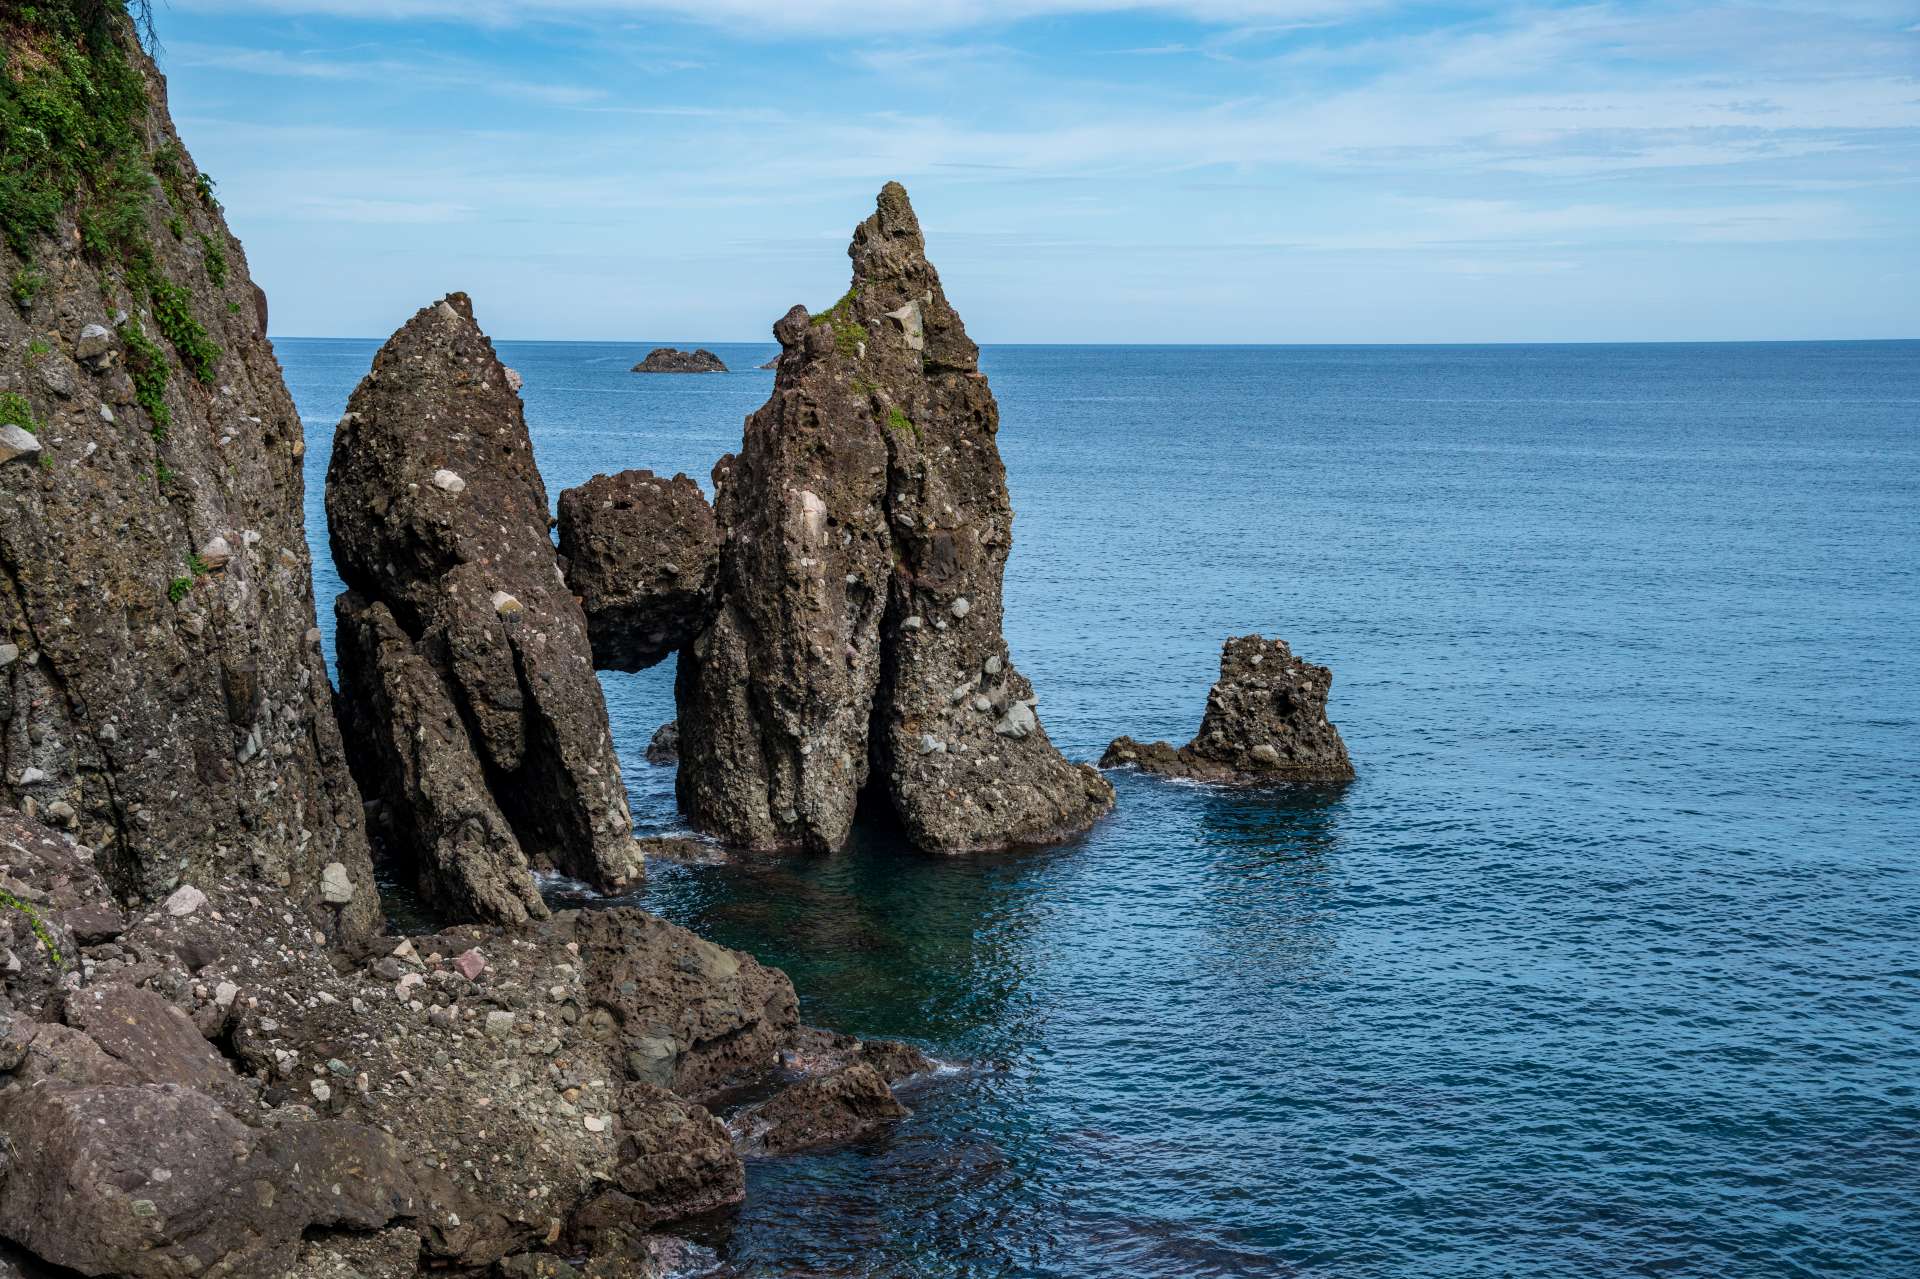 Après avoir conduit le long de la côte de San'in depuis la côte de Kasumi pendant environ une heure, vous verrez le "Hasakari Rock" sur la plage de Takeno. On y trouve des roches étrangement structurées avec un rocher de 3-4 m de diamètre pris en sandwich entre deux gros rochers en forme de pilier. Ce paysage équilibré particulier créé par la nature vous amusera sûrement.